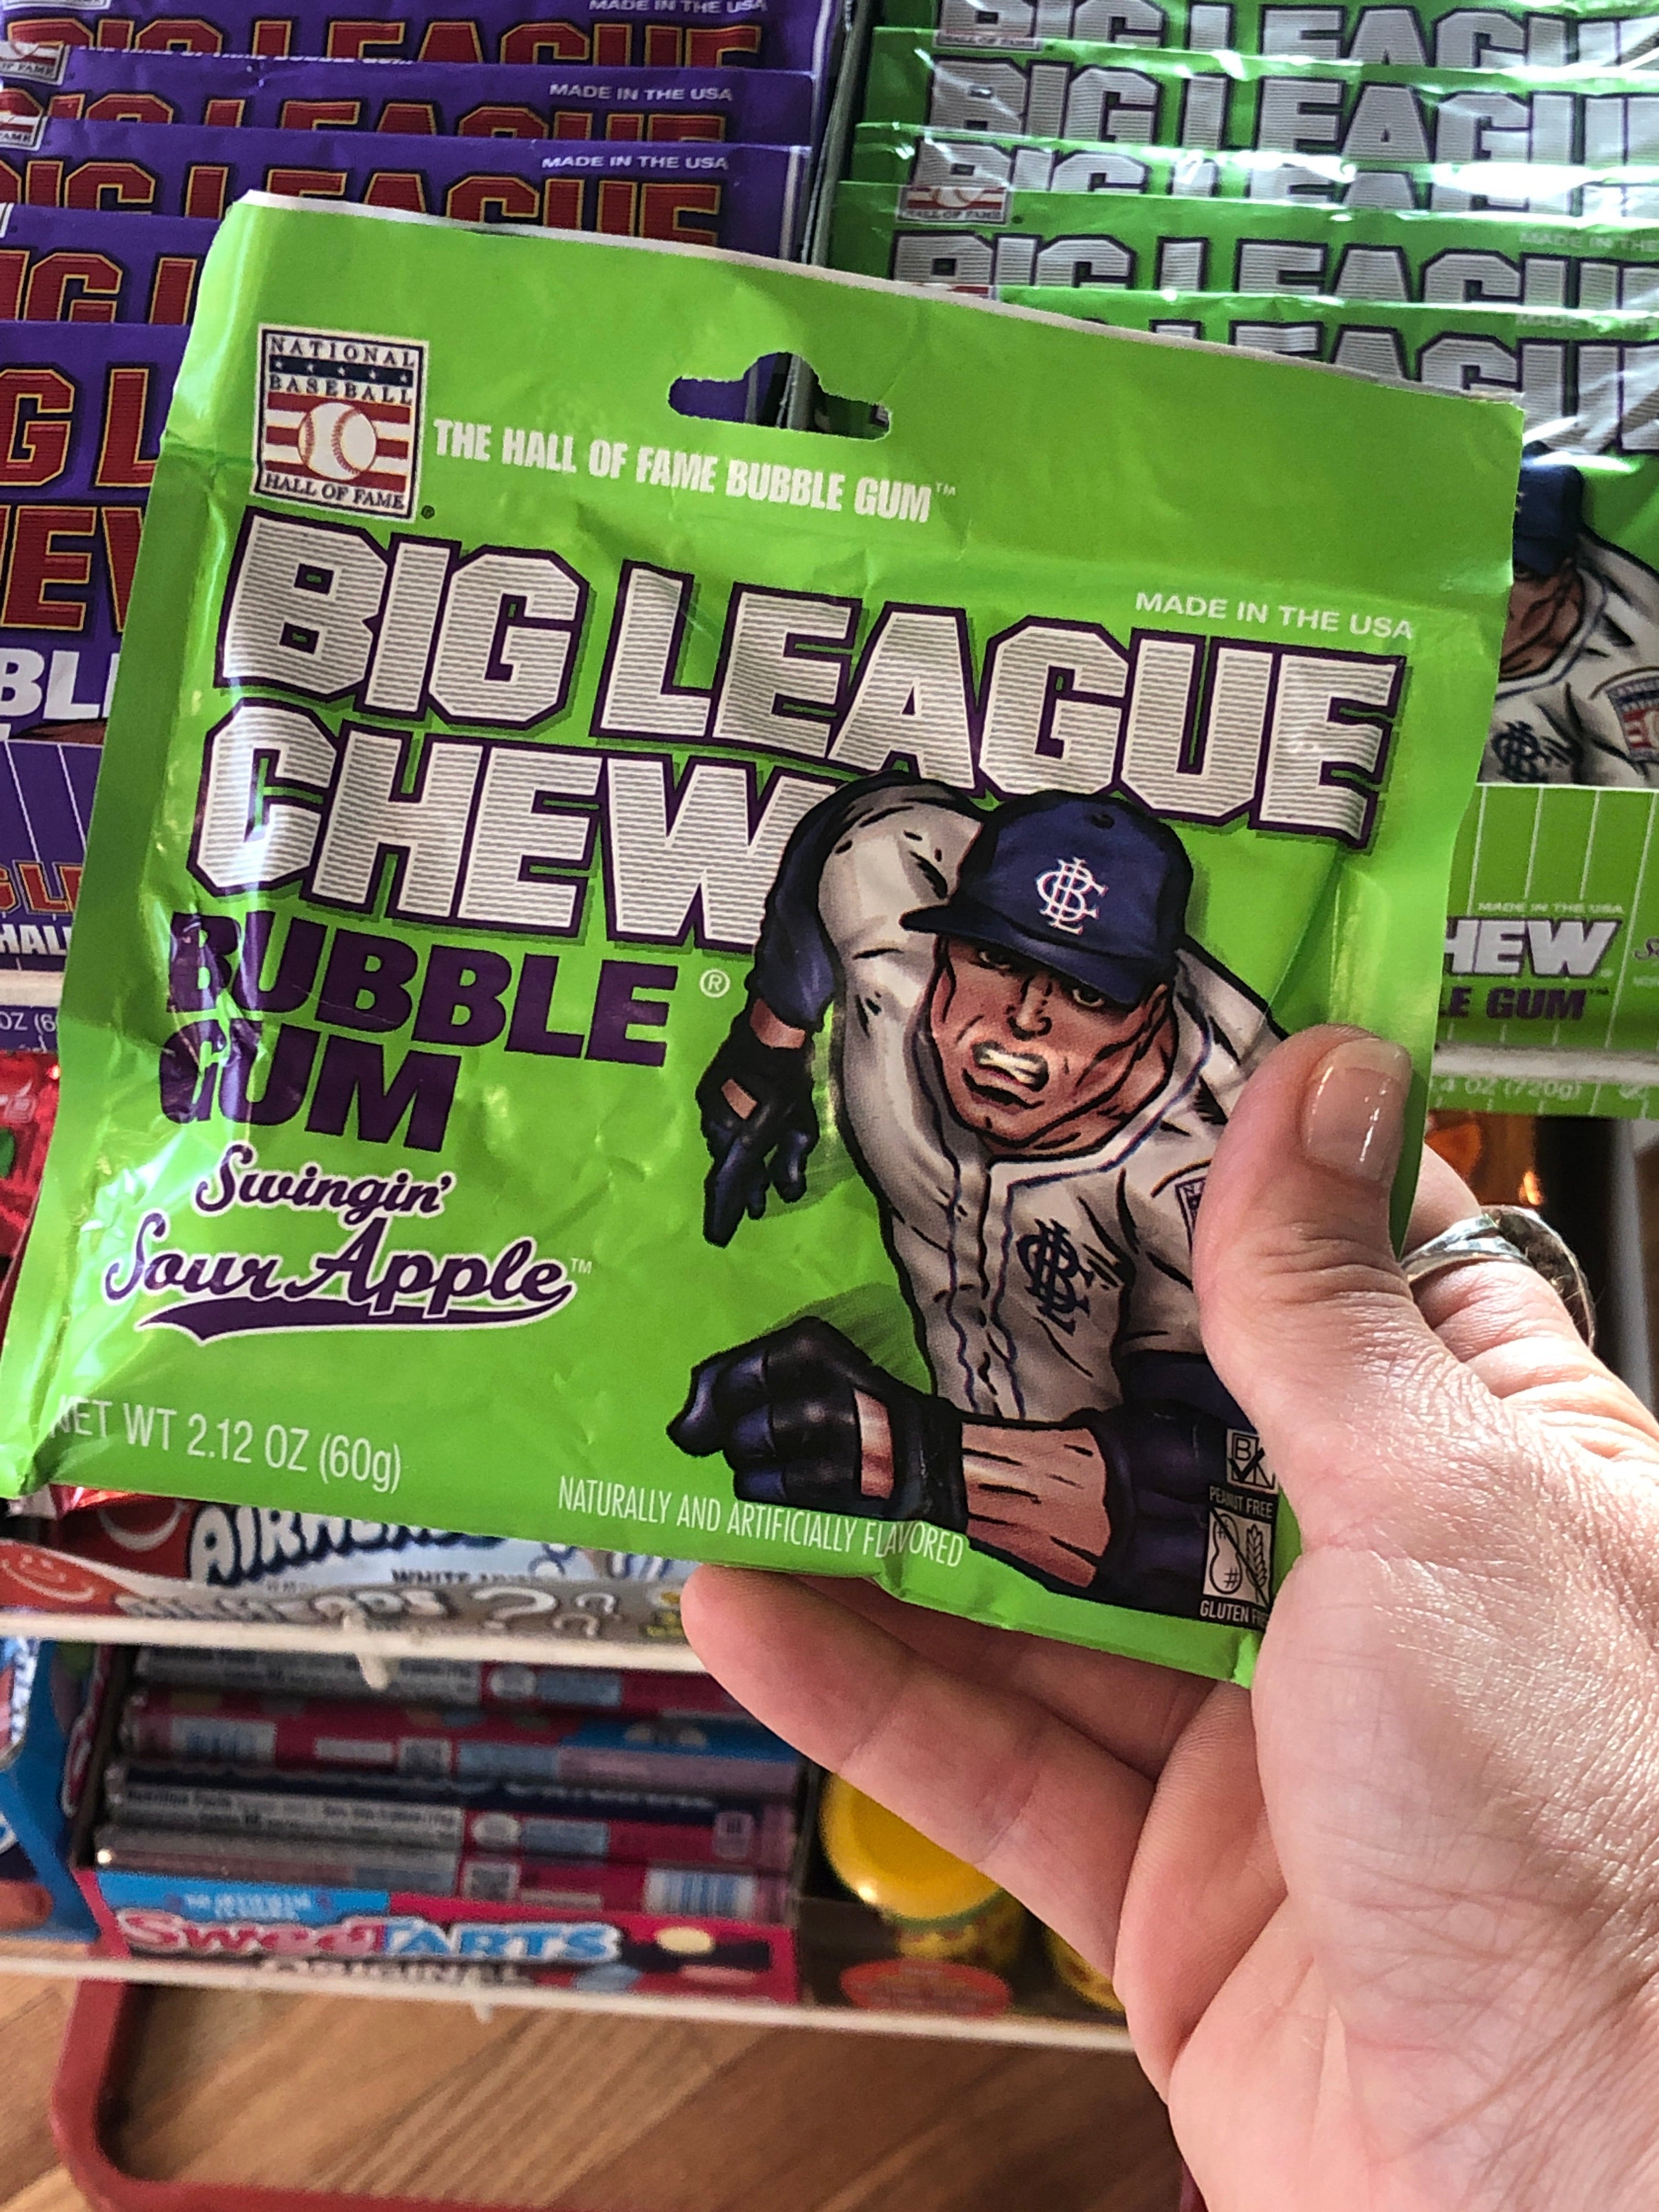 Big League Chew Bubble Gum, Sour Apple - 2.12 oz pouch